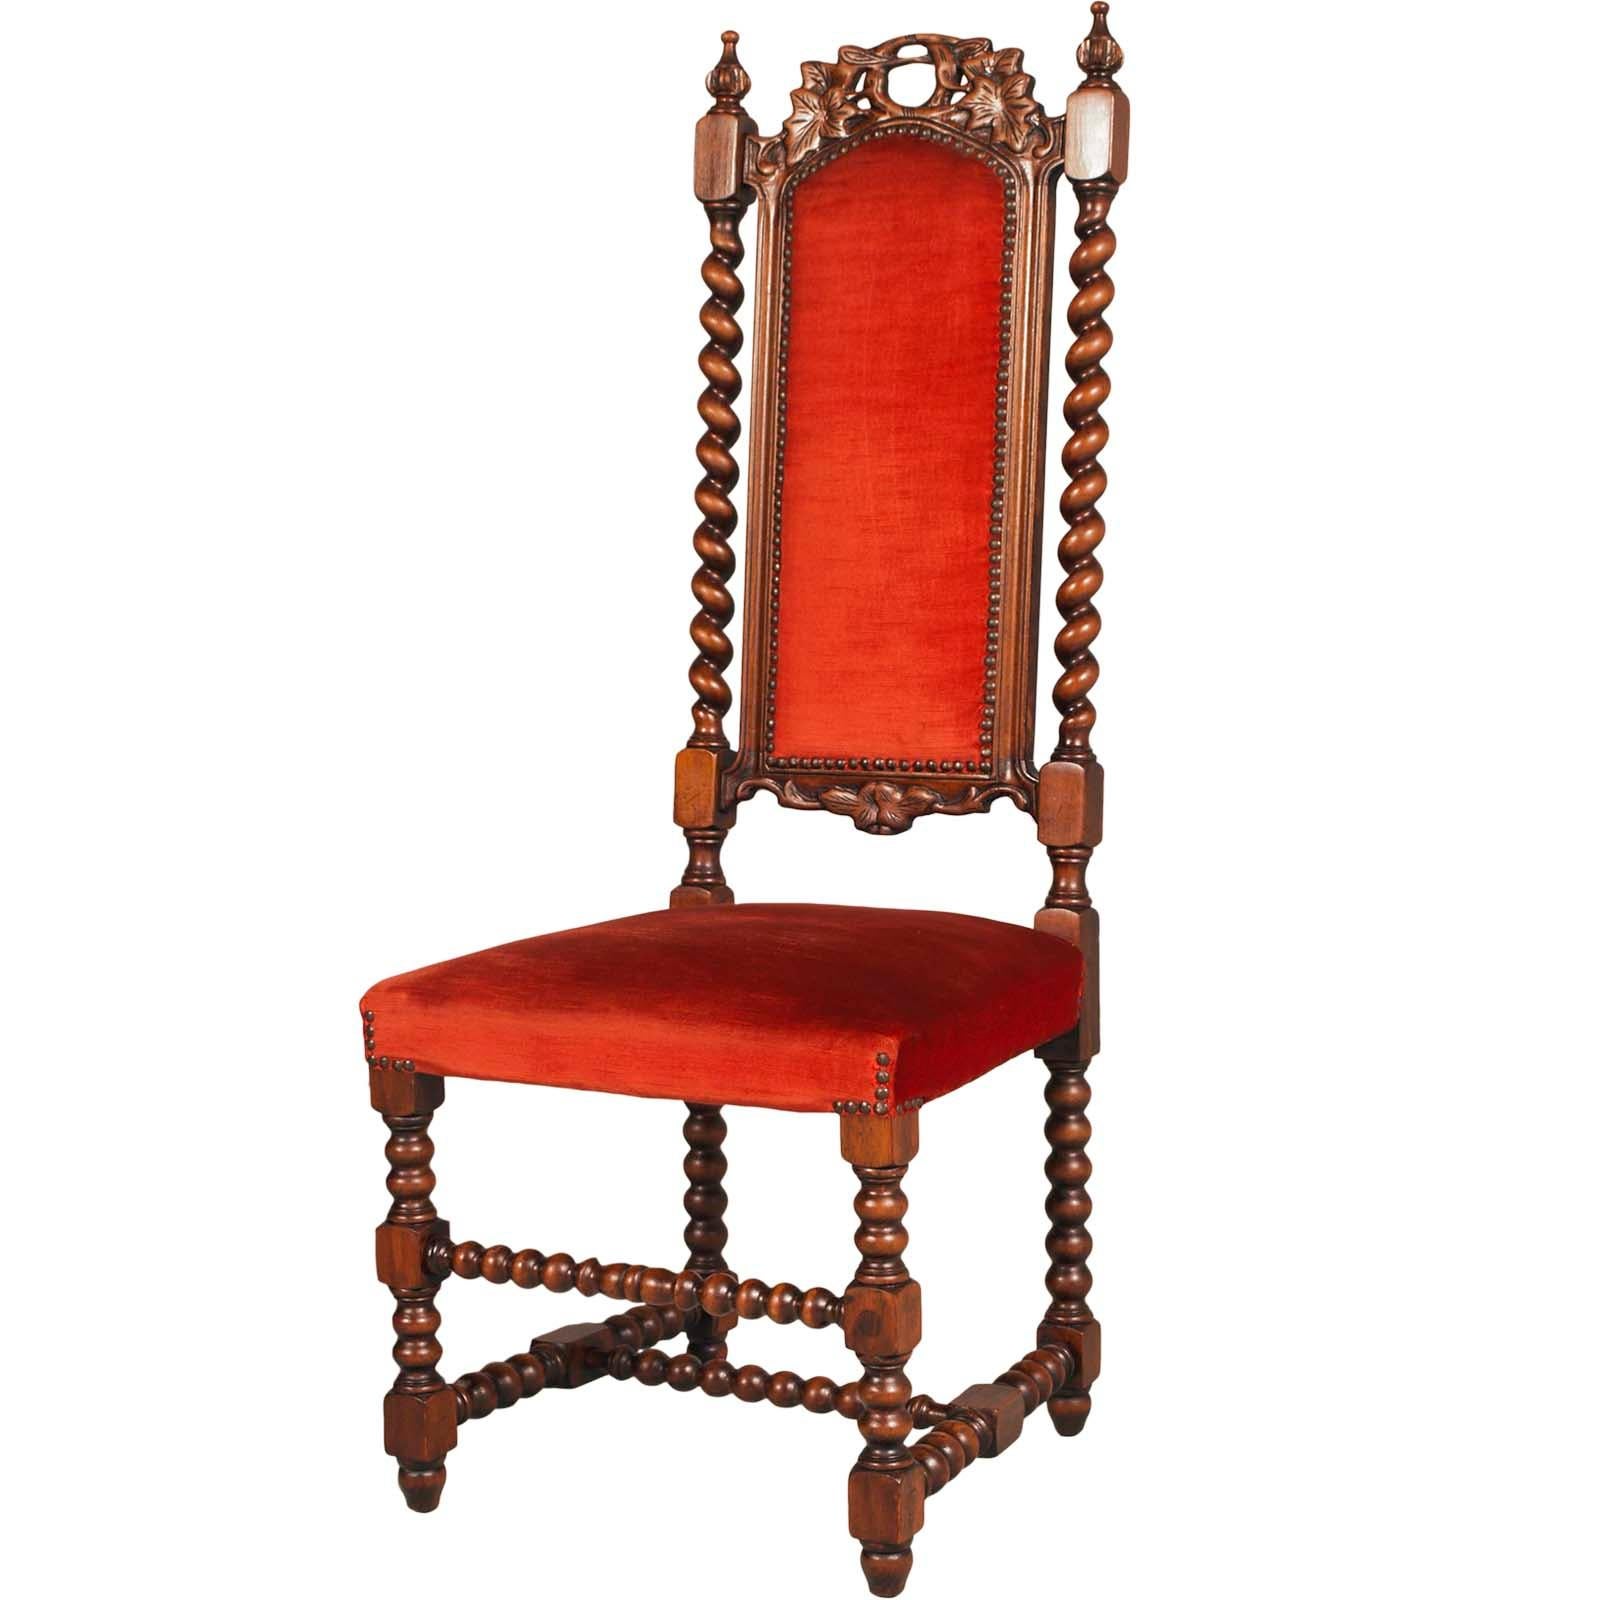 Paar venezianische Sessel des Ateliers Cadorin, Ende 19. Jahrhundert, aus Nussbaumholz, handgeschnitzt.
Die beiden Stühle sind mit dem originalen roten Samtstoff gepolstert. Einer der beiden Sitze hat einen leichten Riss, der den Sitz nicht